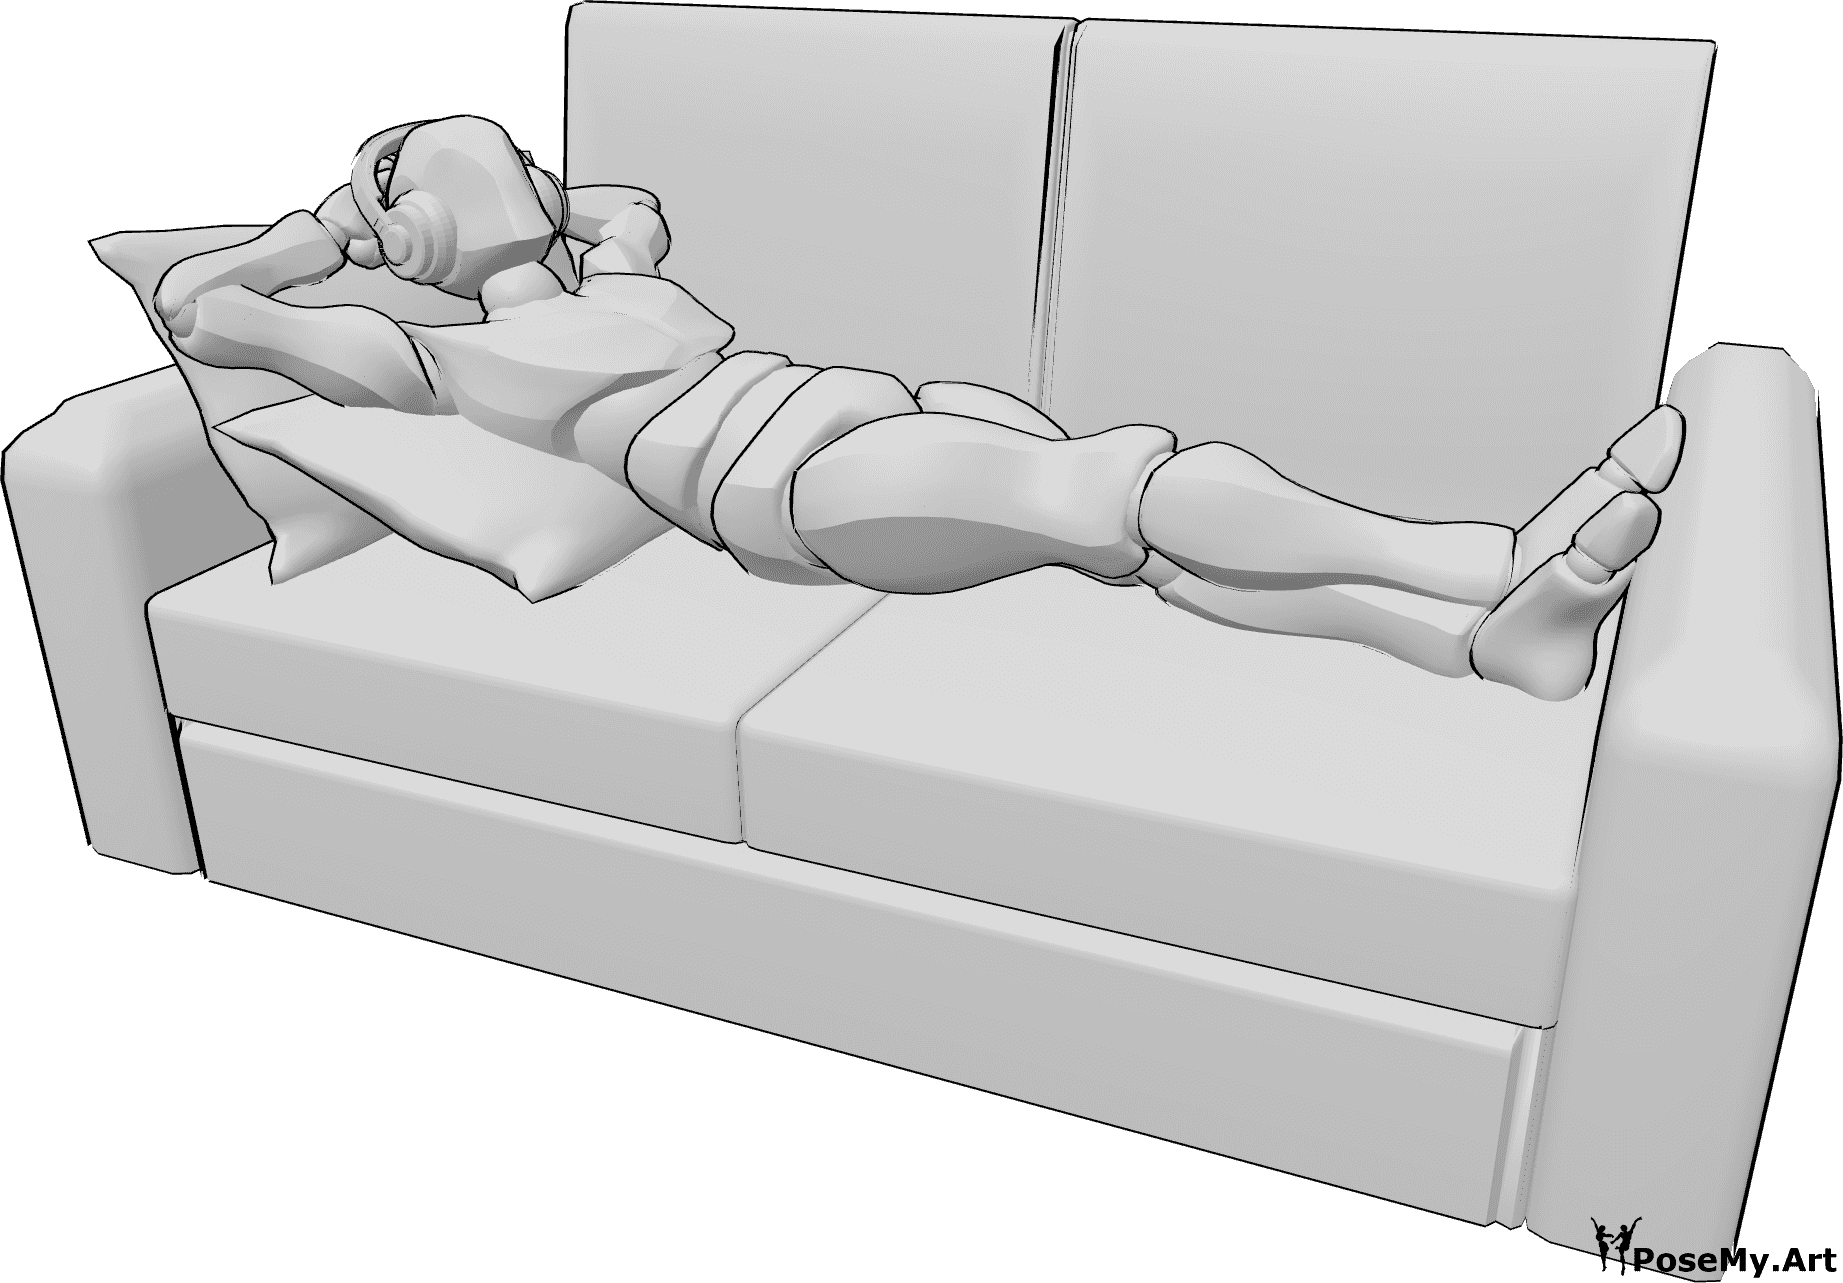 Posen-Referenz- Männliche liegende Kopfhörer-Pose - Mann liegt bequem auf der Couch und hört Musik über Kopfhörer